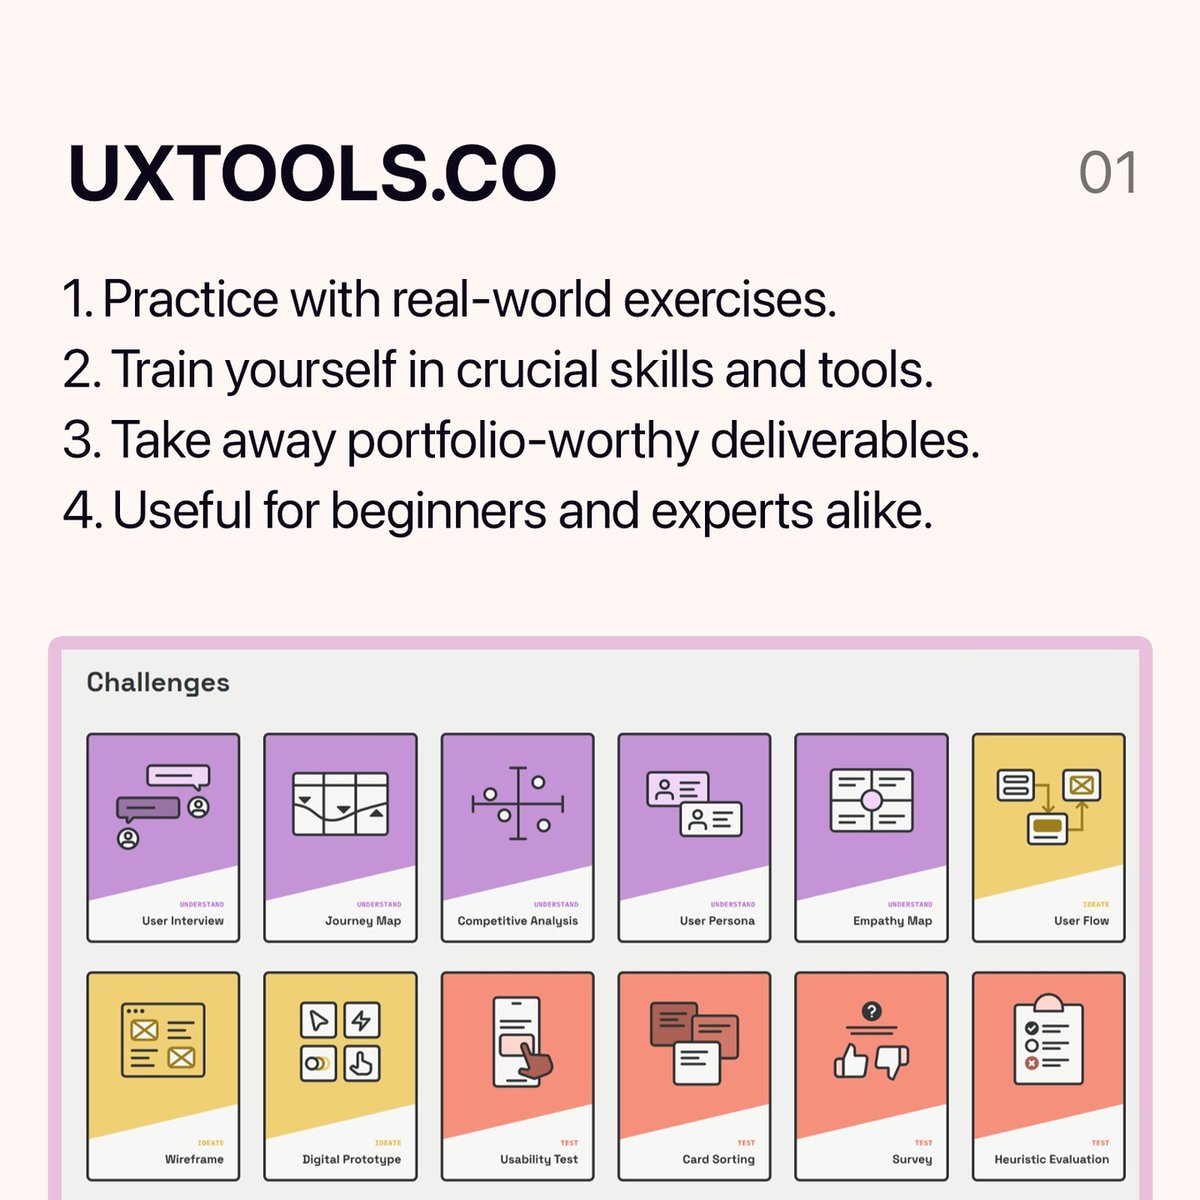 1) UXtools - uxtools.co